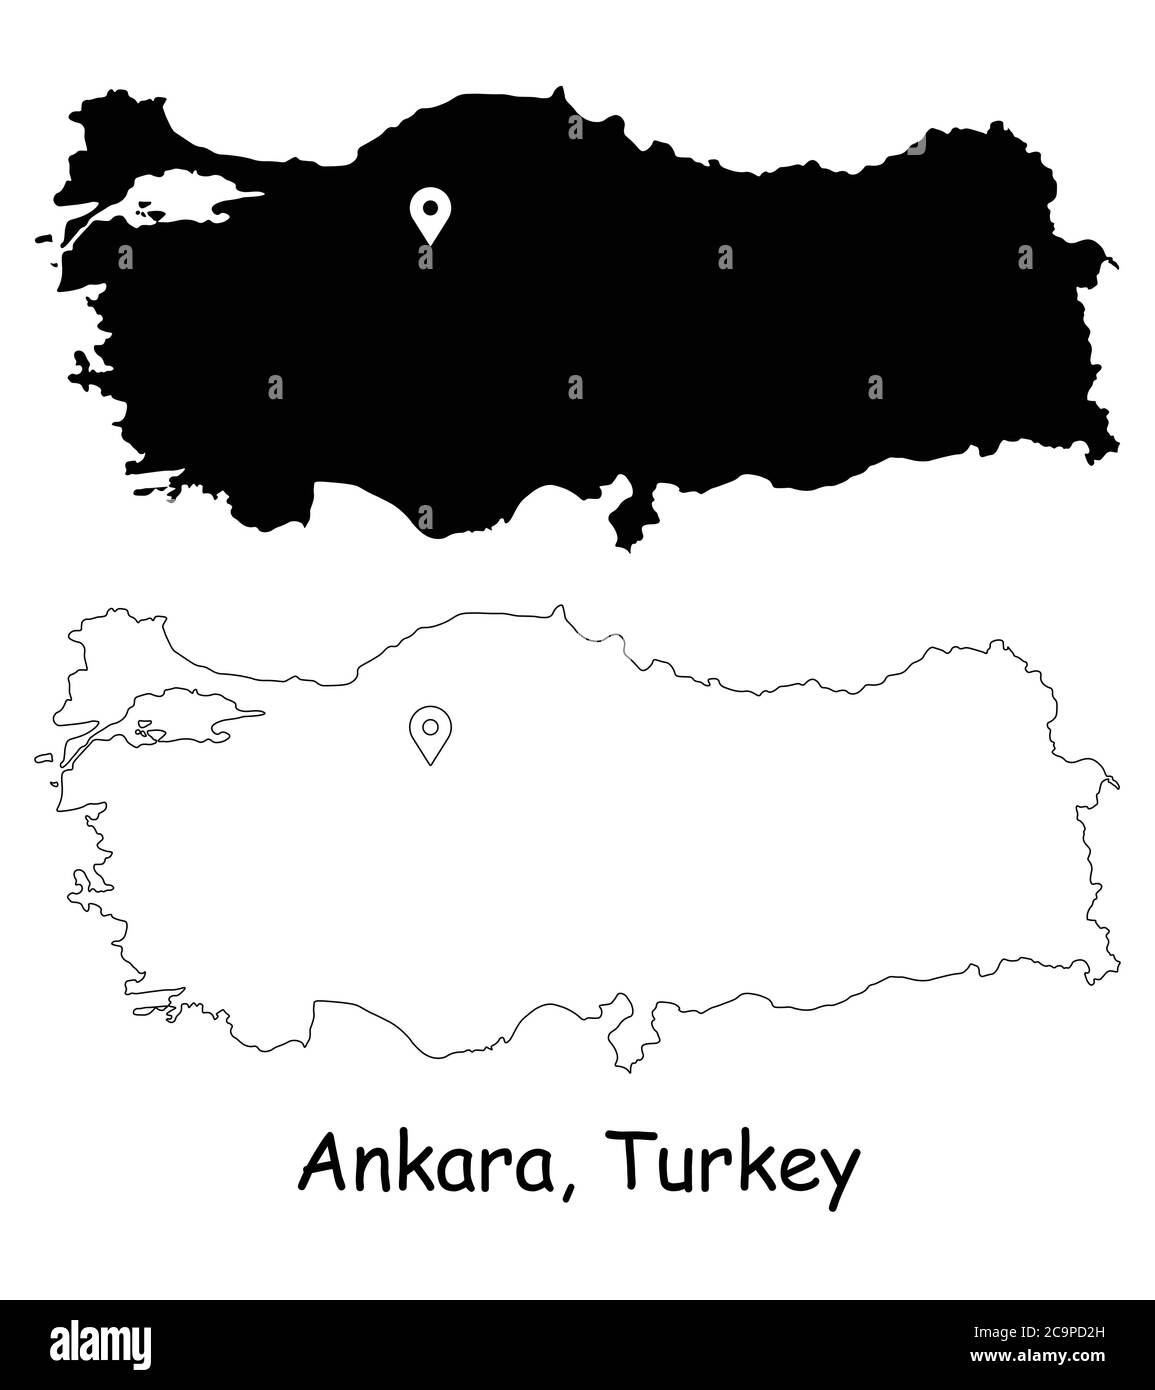 Ankara, Turchia. Mappa dettagliata del Paese con il pin della posizione sulla città capitale. Silhouette nera e mappe di contorno isolate su sfondo bianco. Vettore EPS Illustrazione Vettoriale